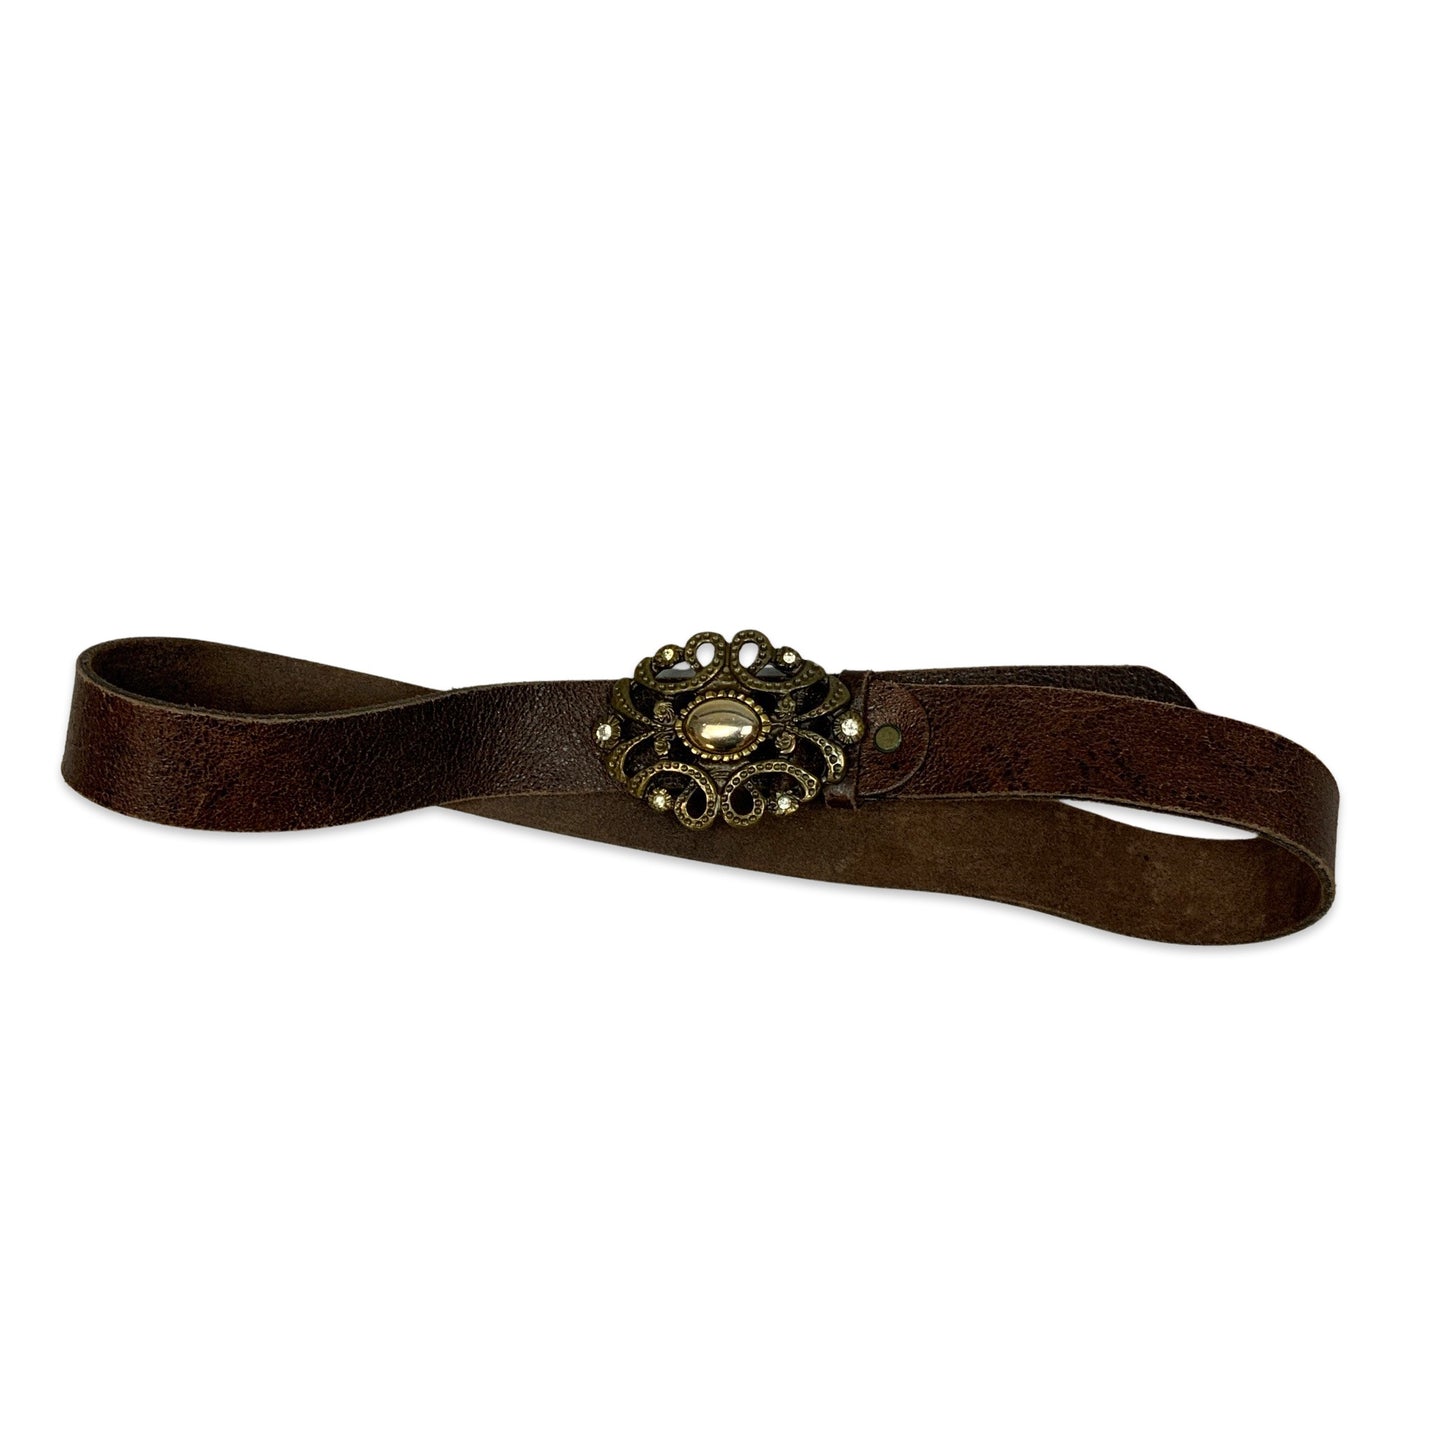 Vintage Ornate Buckle Brown Leather Belt